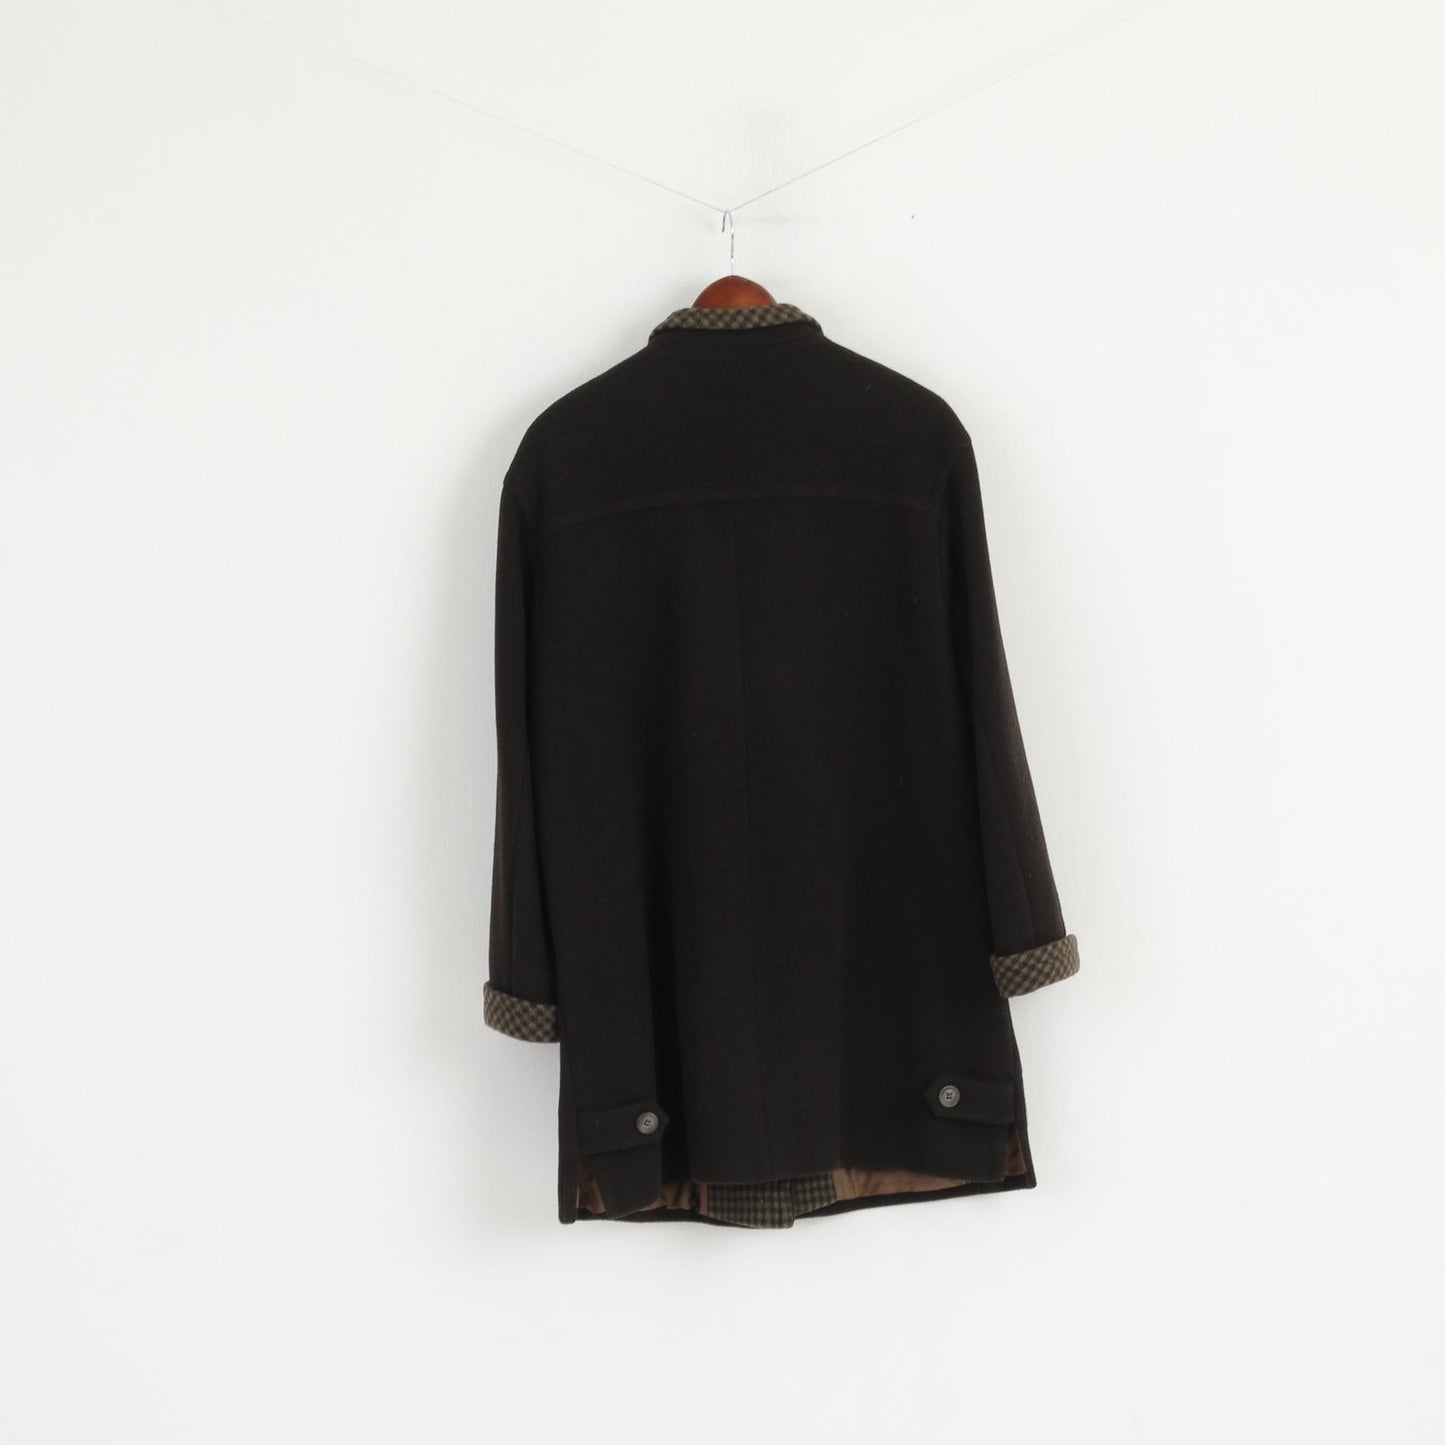 Cappotto modello AZ da donna 40 Top classico monopetto in lana marrone e cashmere di qualità